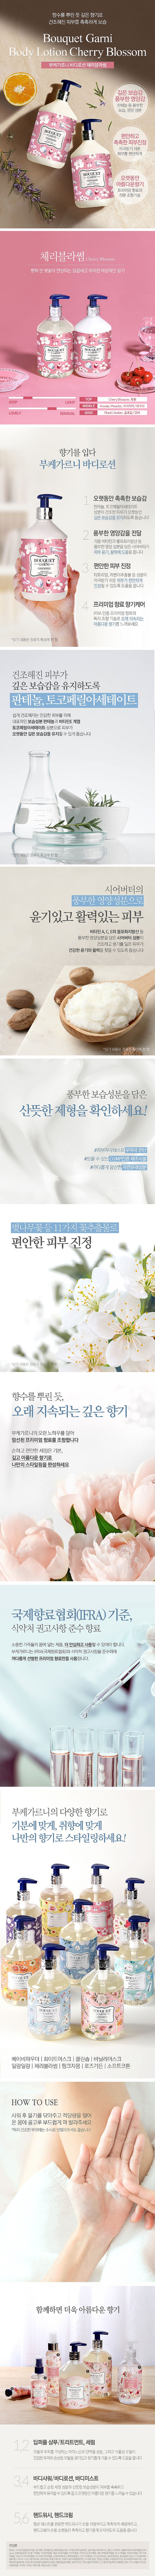 身體乳 身體保養 韓國 身體保養 保濕霜 身體保養